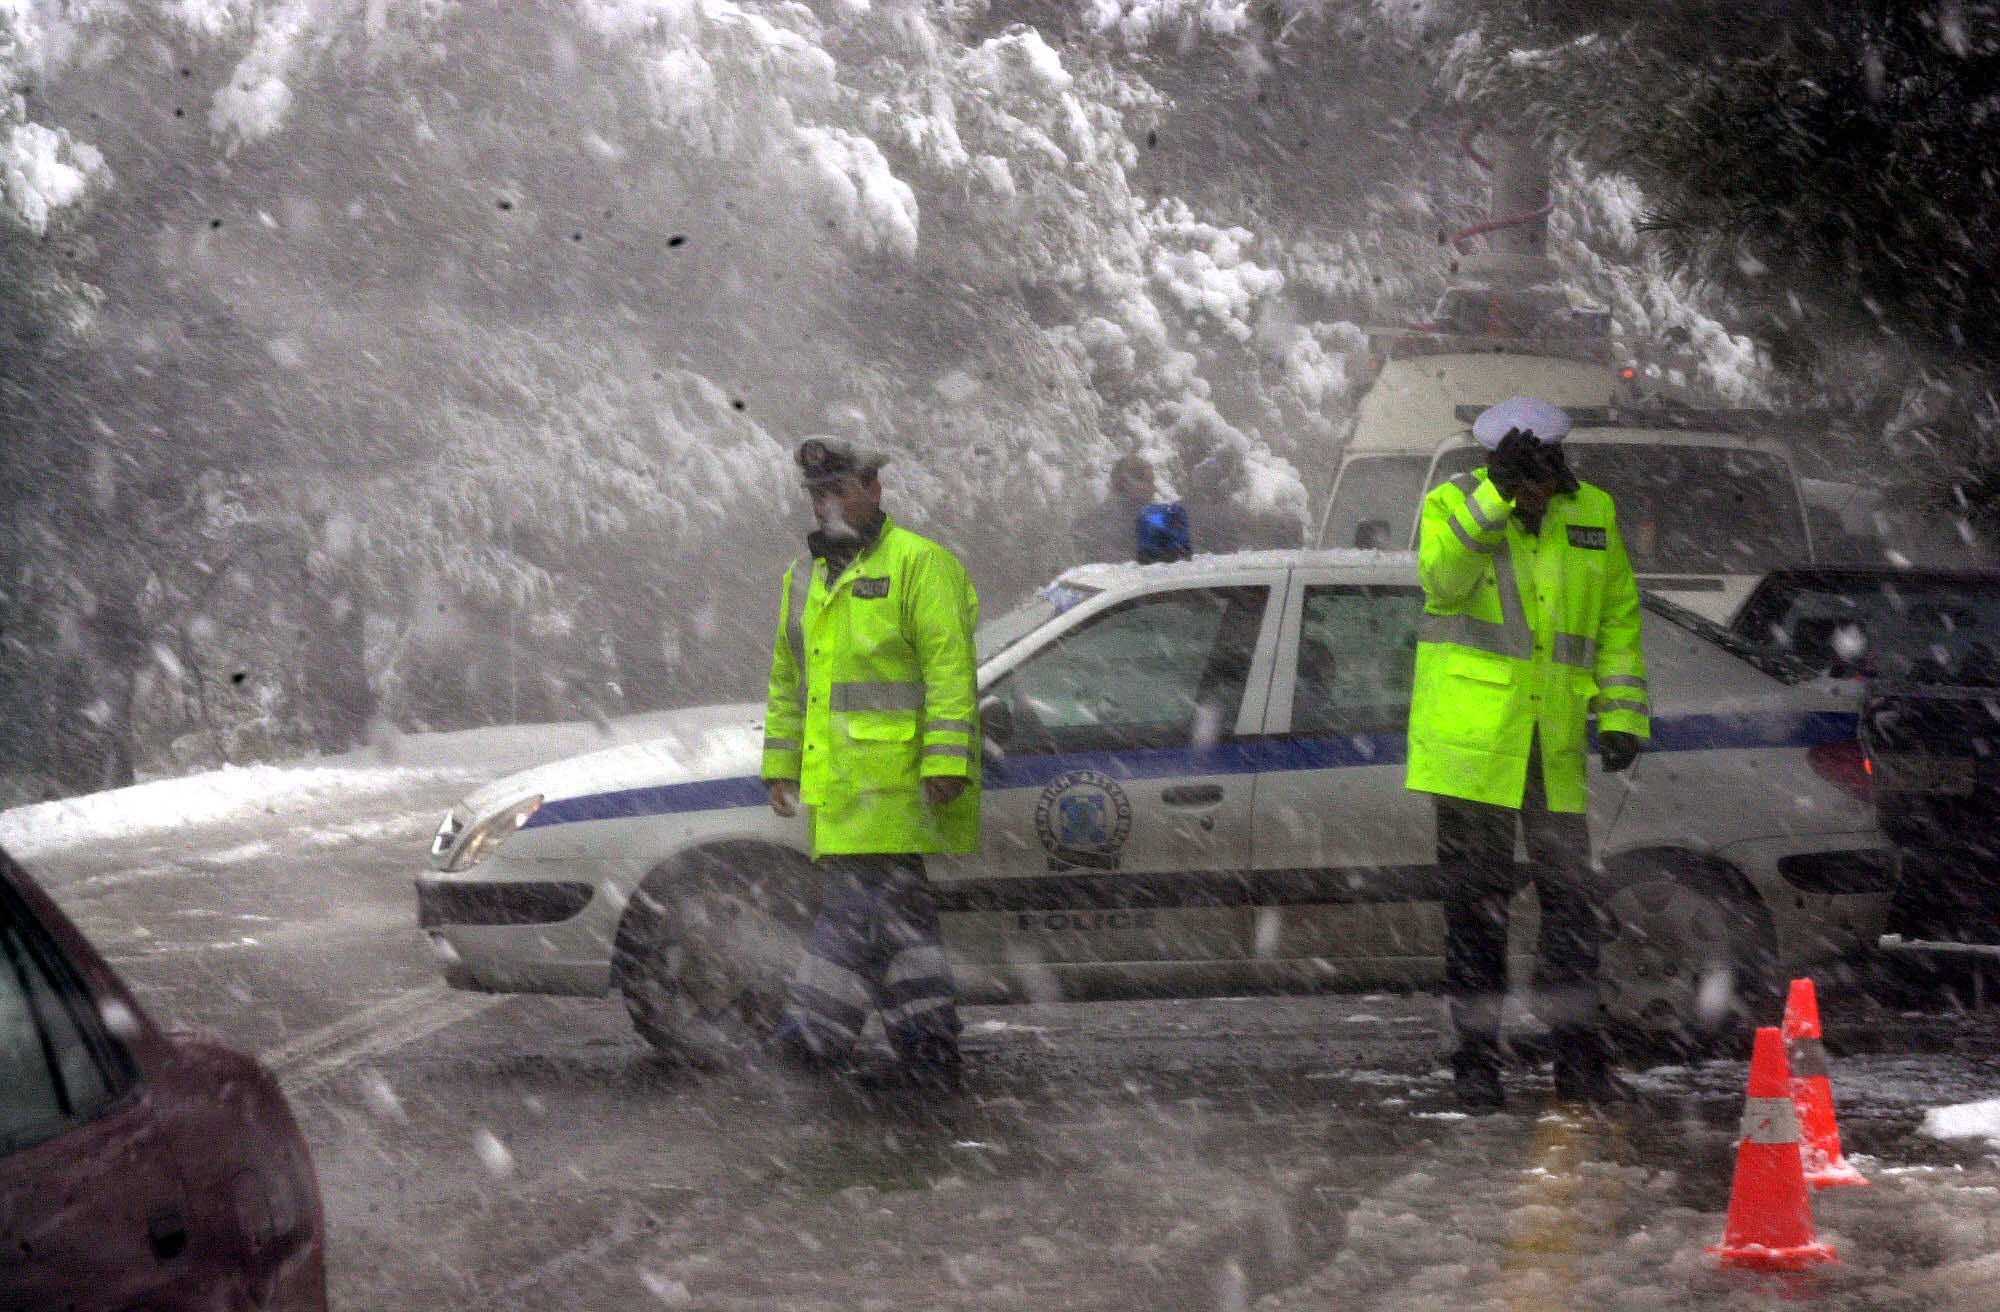 Κακοκαιρία: Διακοπή της κυκλοφορίας οχημάτων στη λεωφόρο Πάρνηθας λόγω χιονόπτωσης